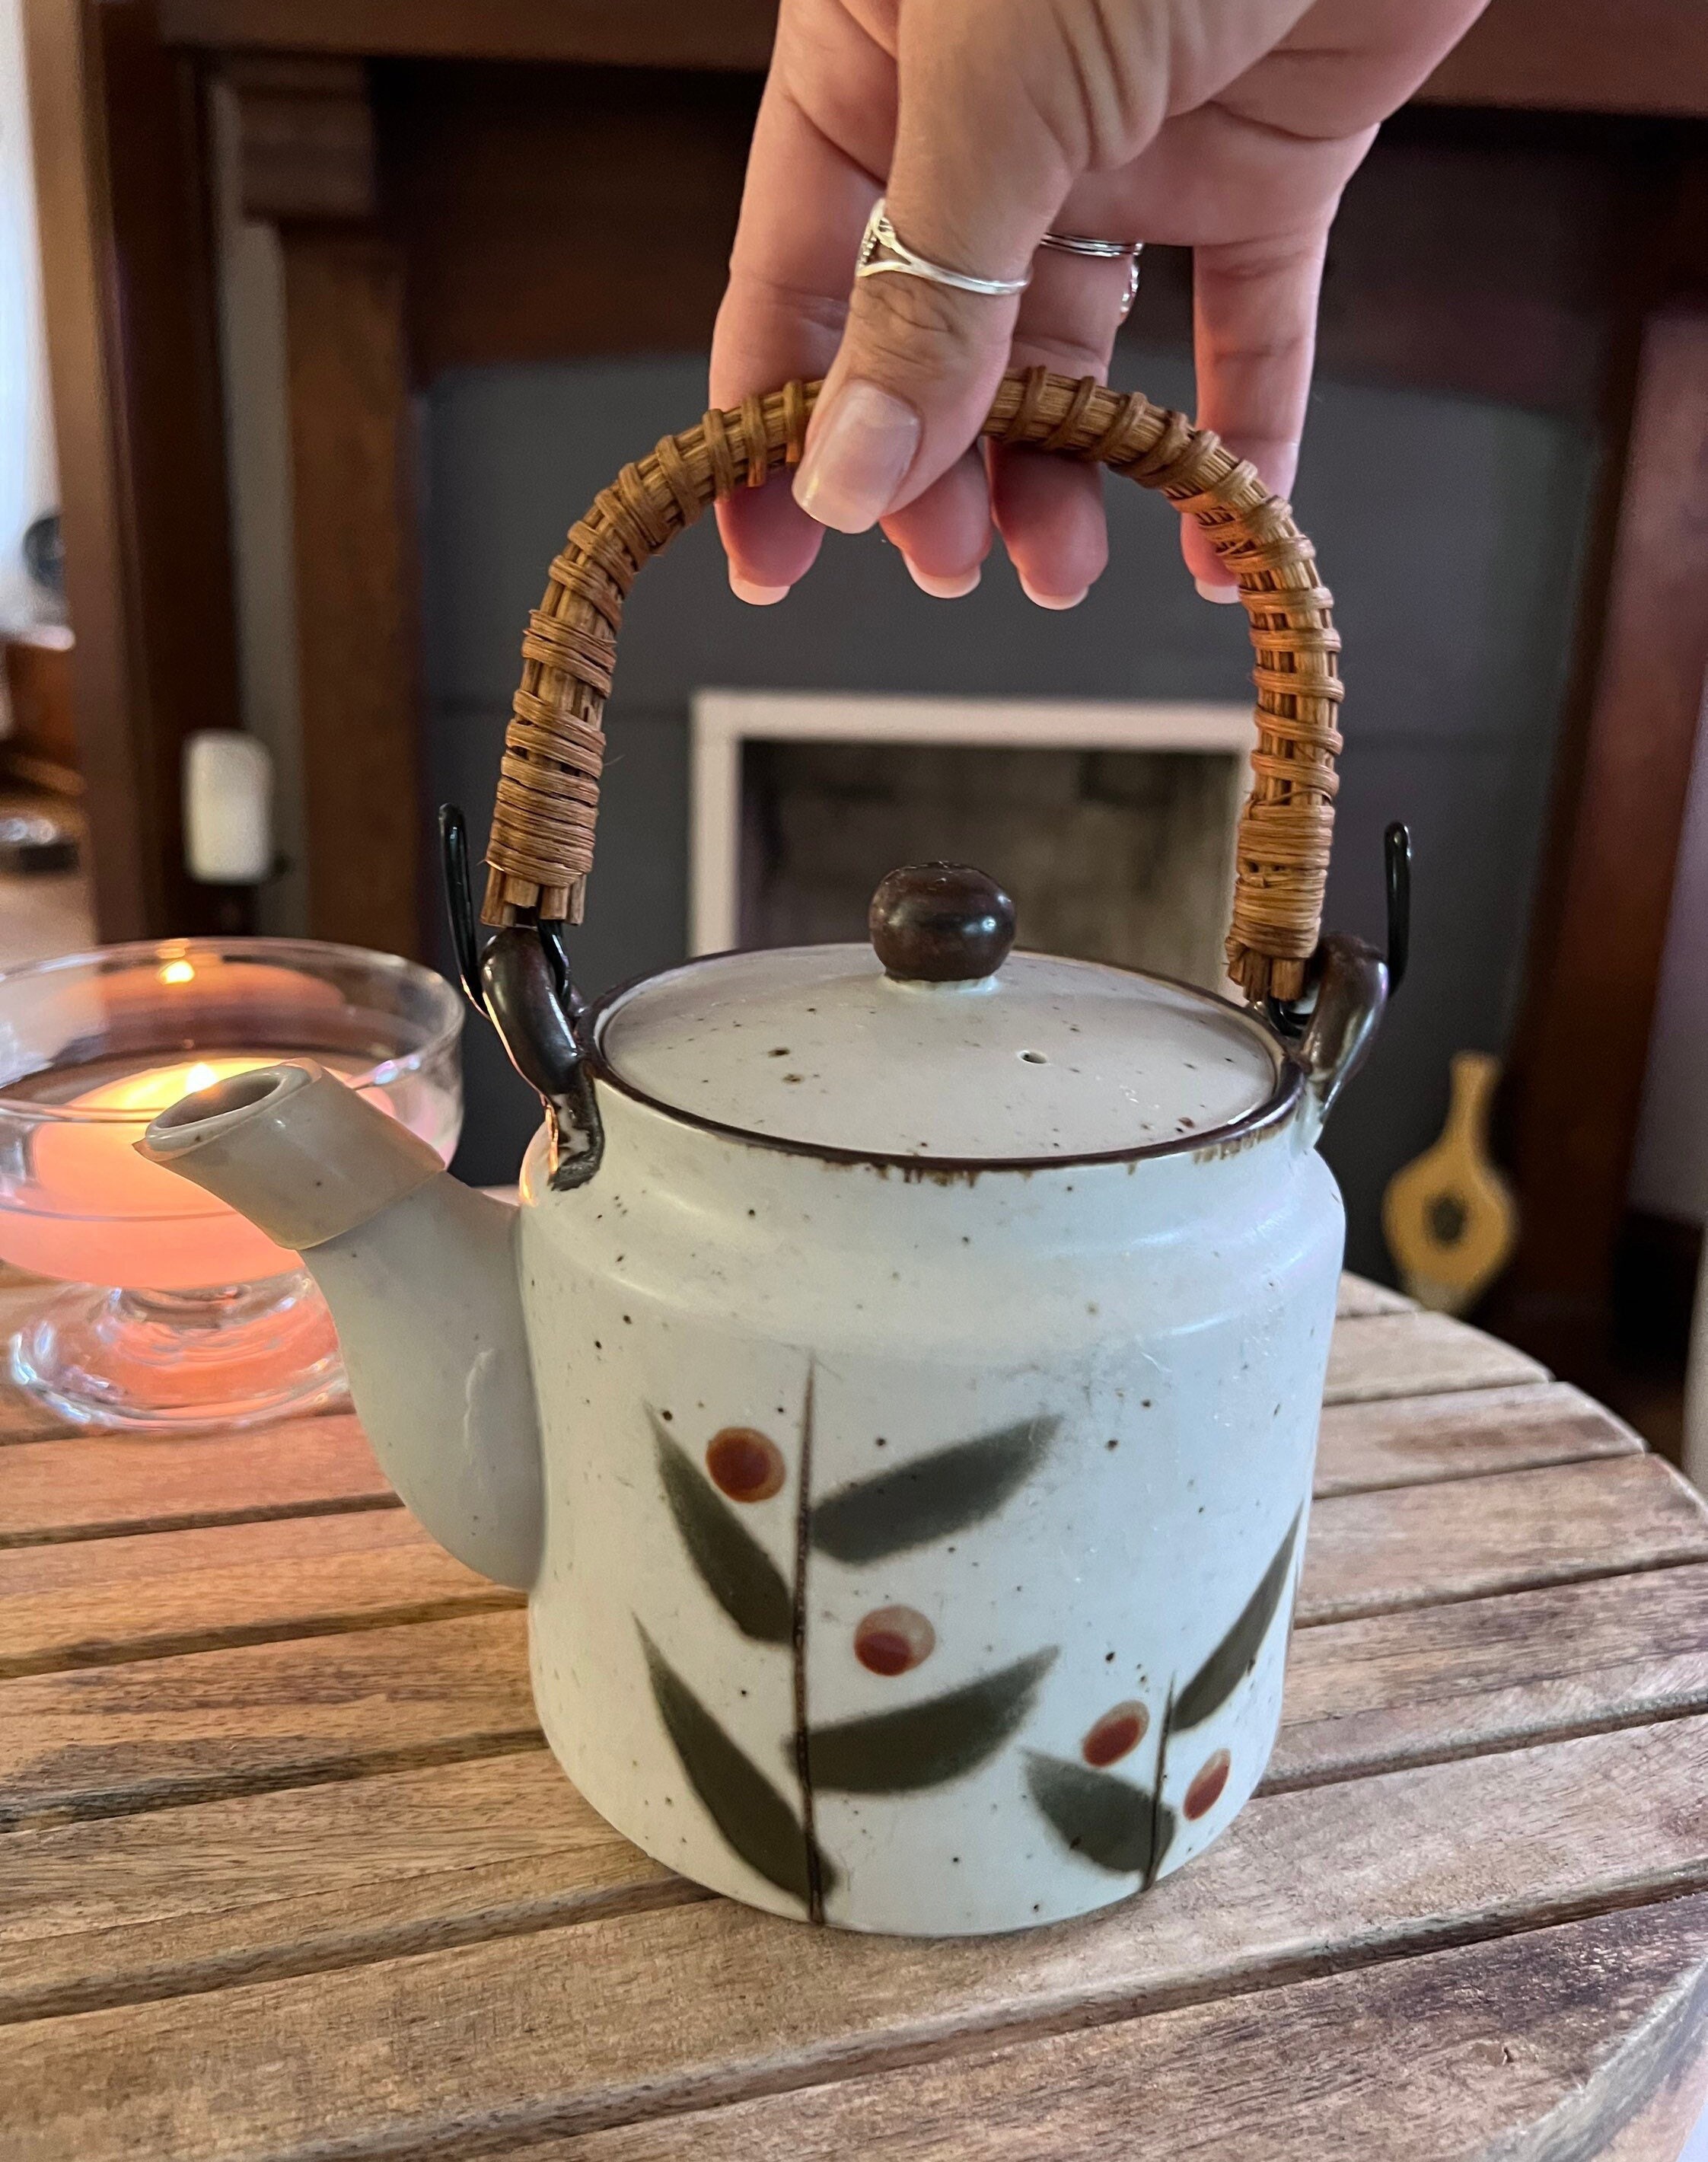 36 Unique Teapot Designs